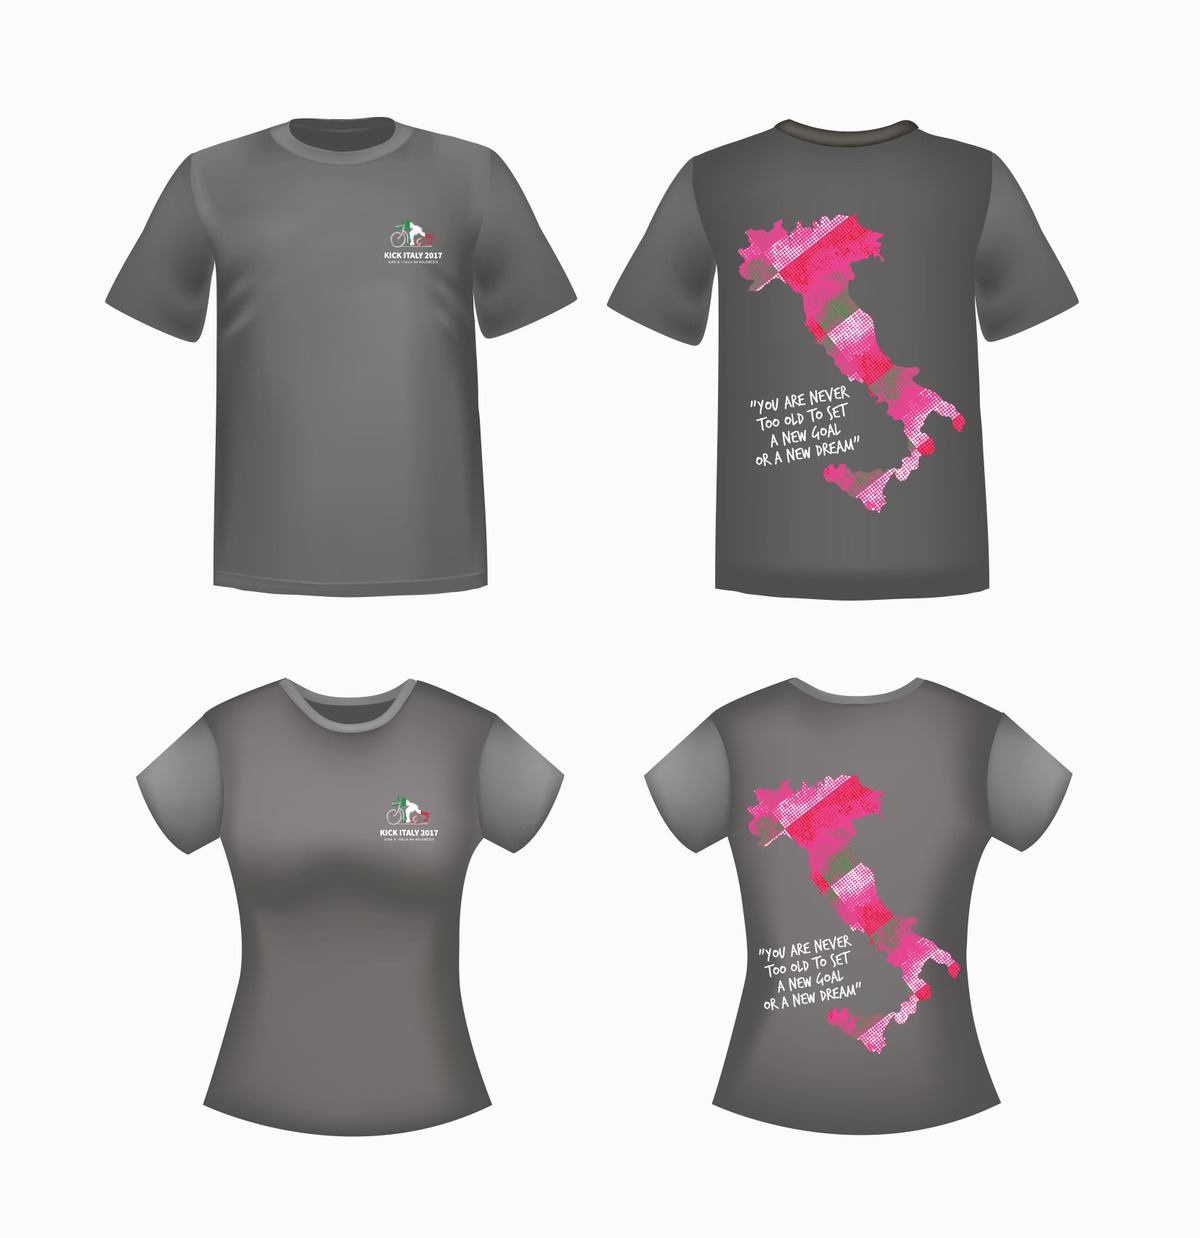 Limitovaná edice triček KICK ITALY 2017